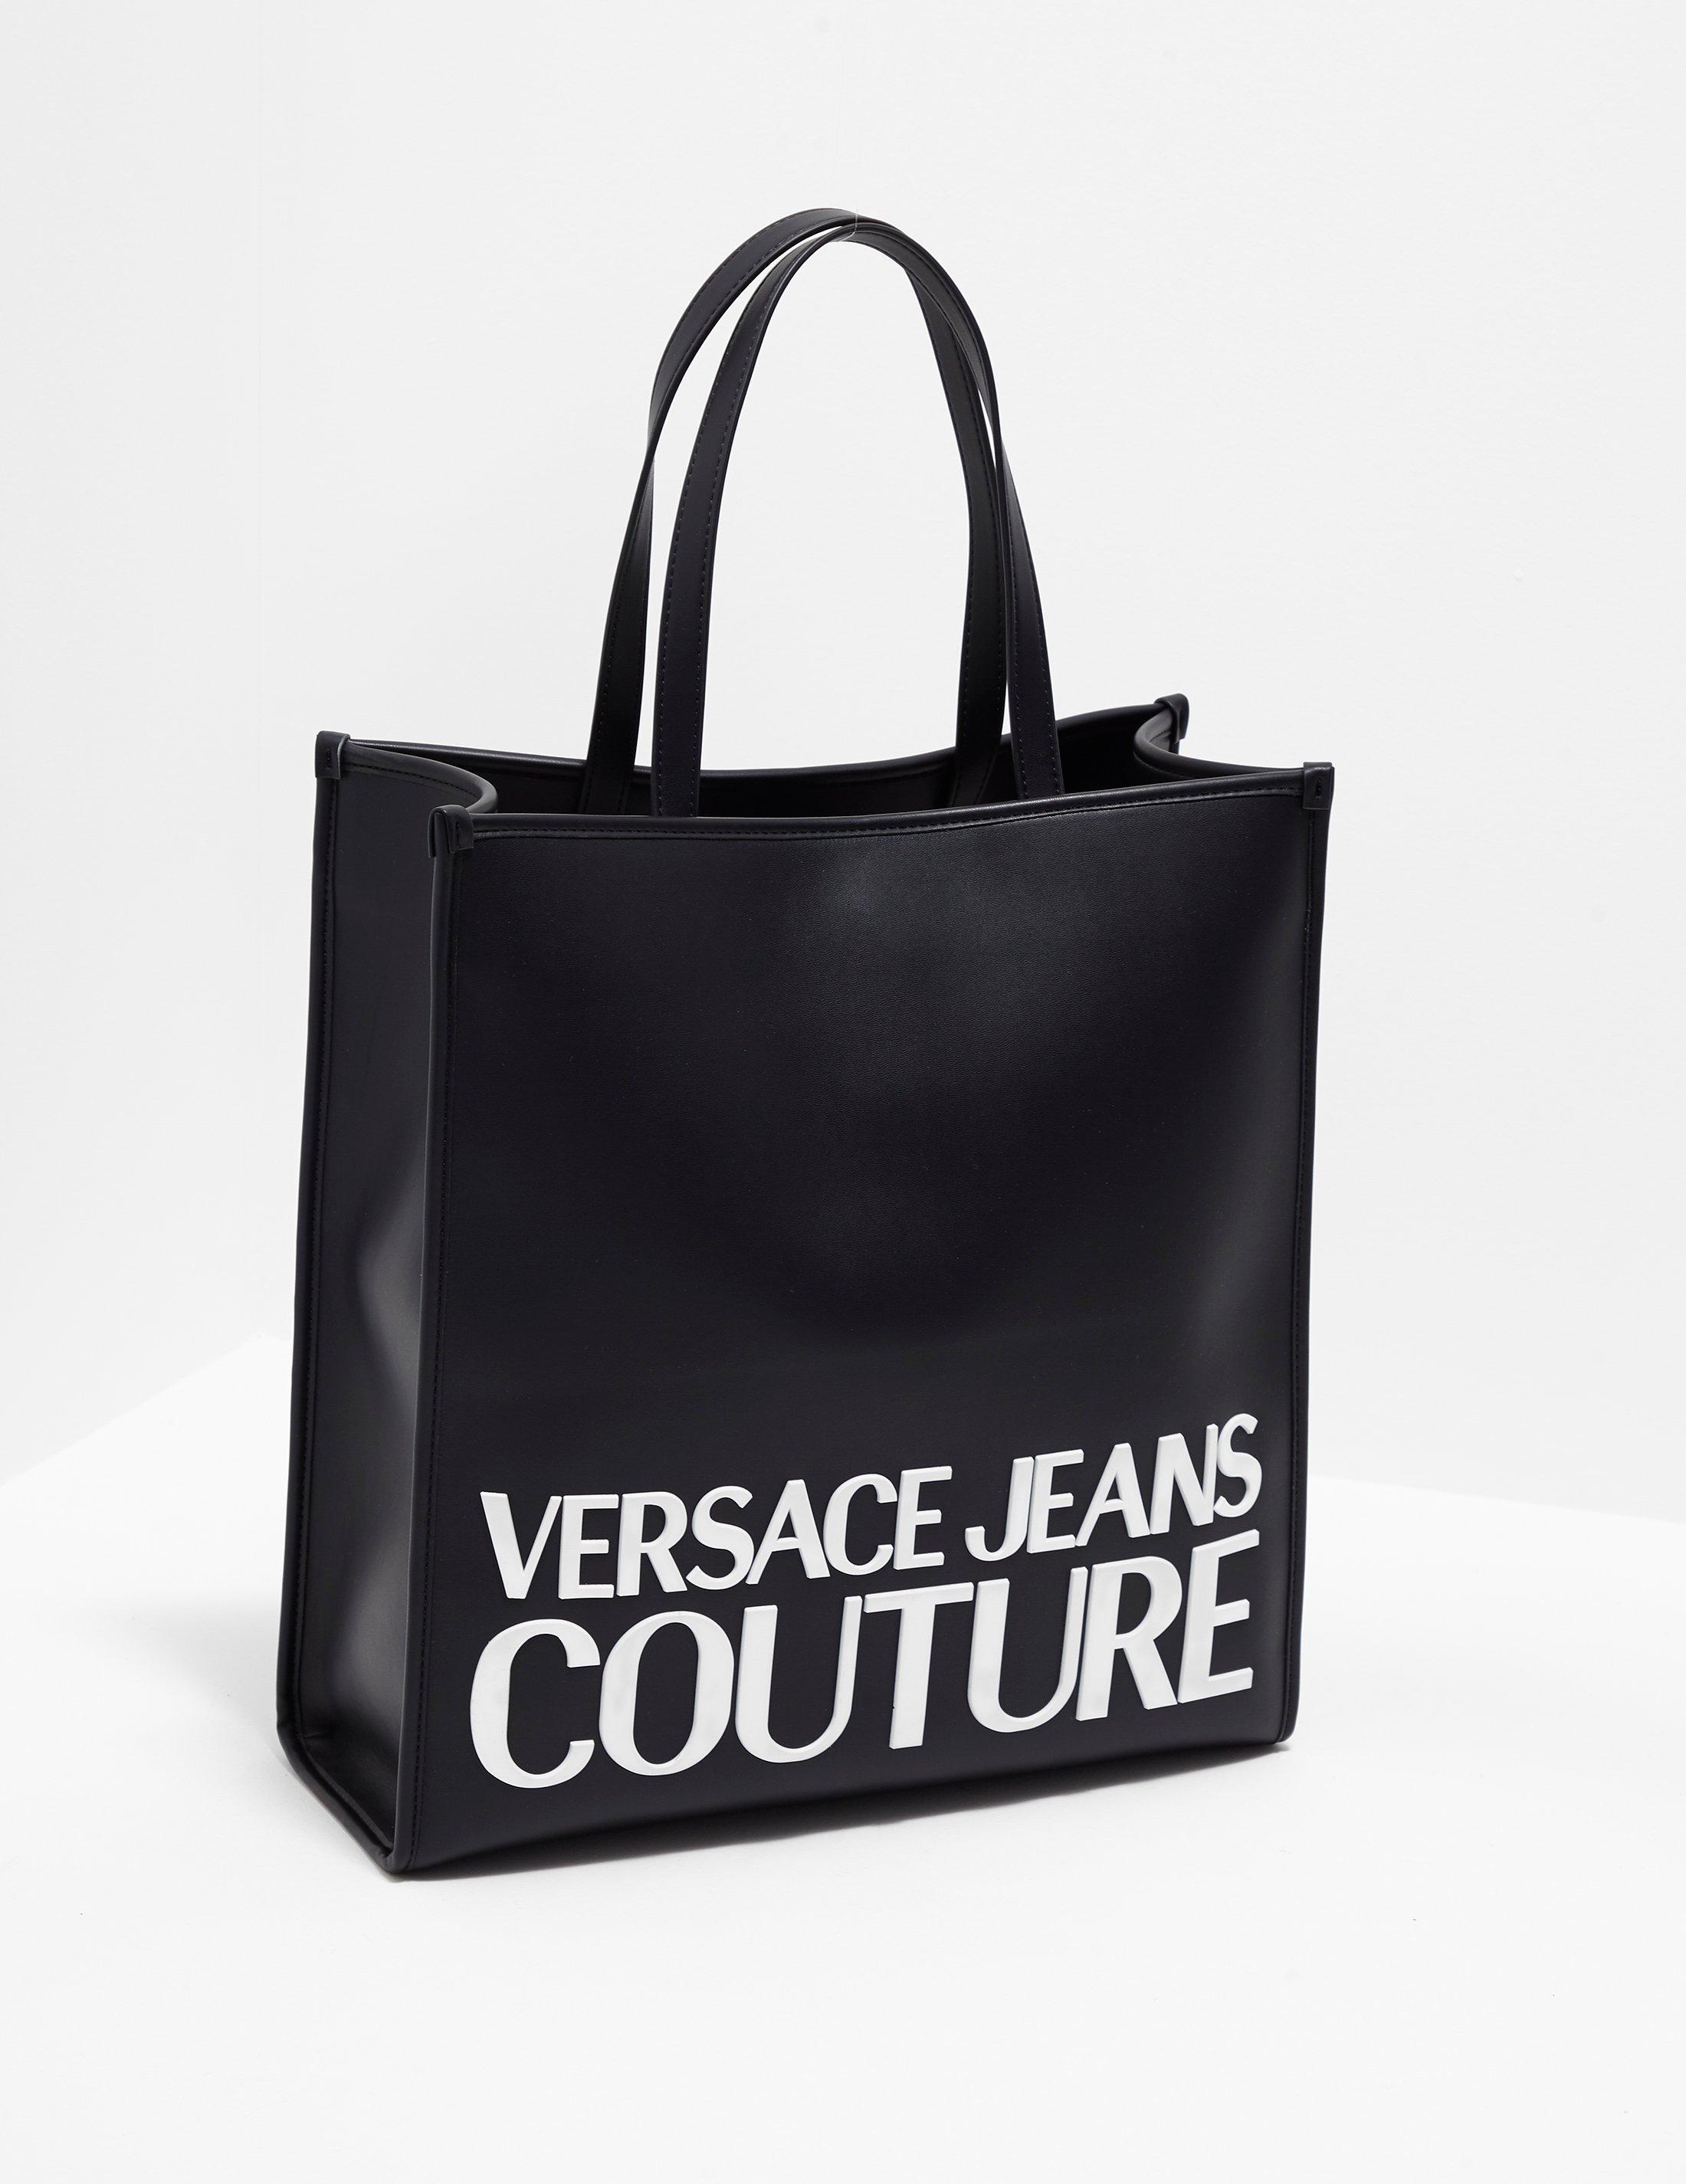 Oft gesprochen Verkaufsplan Zusatz versace jeans logo shopper bag ...